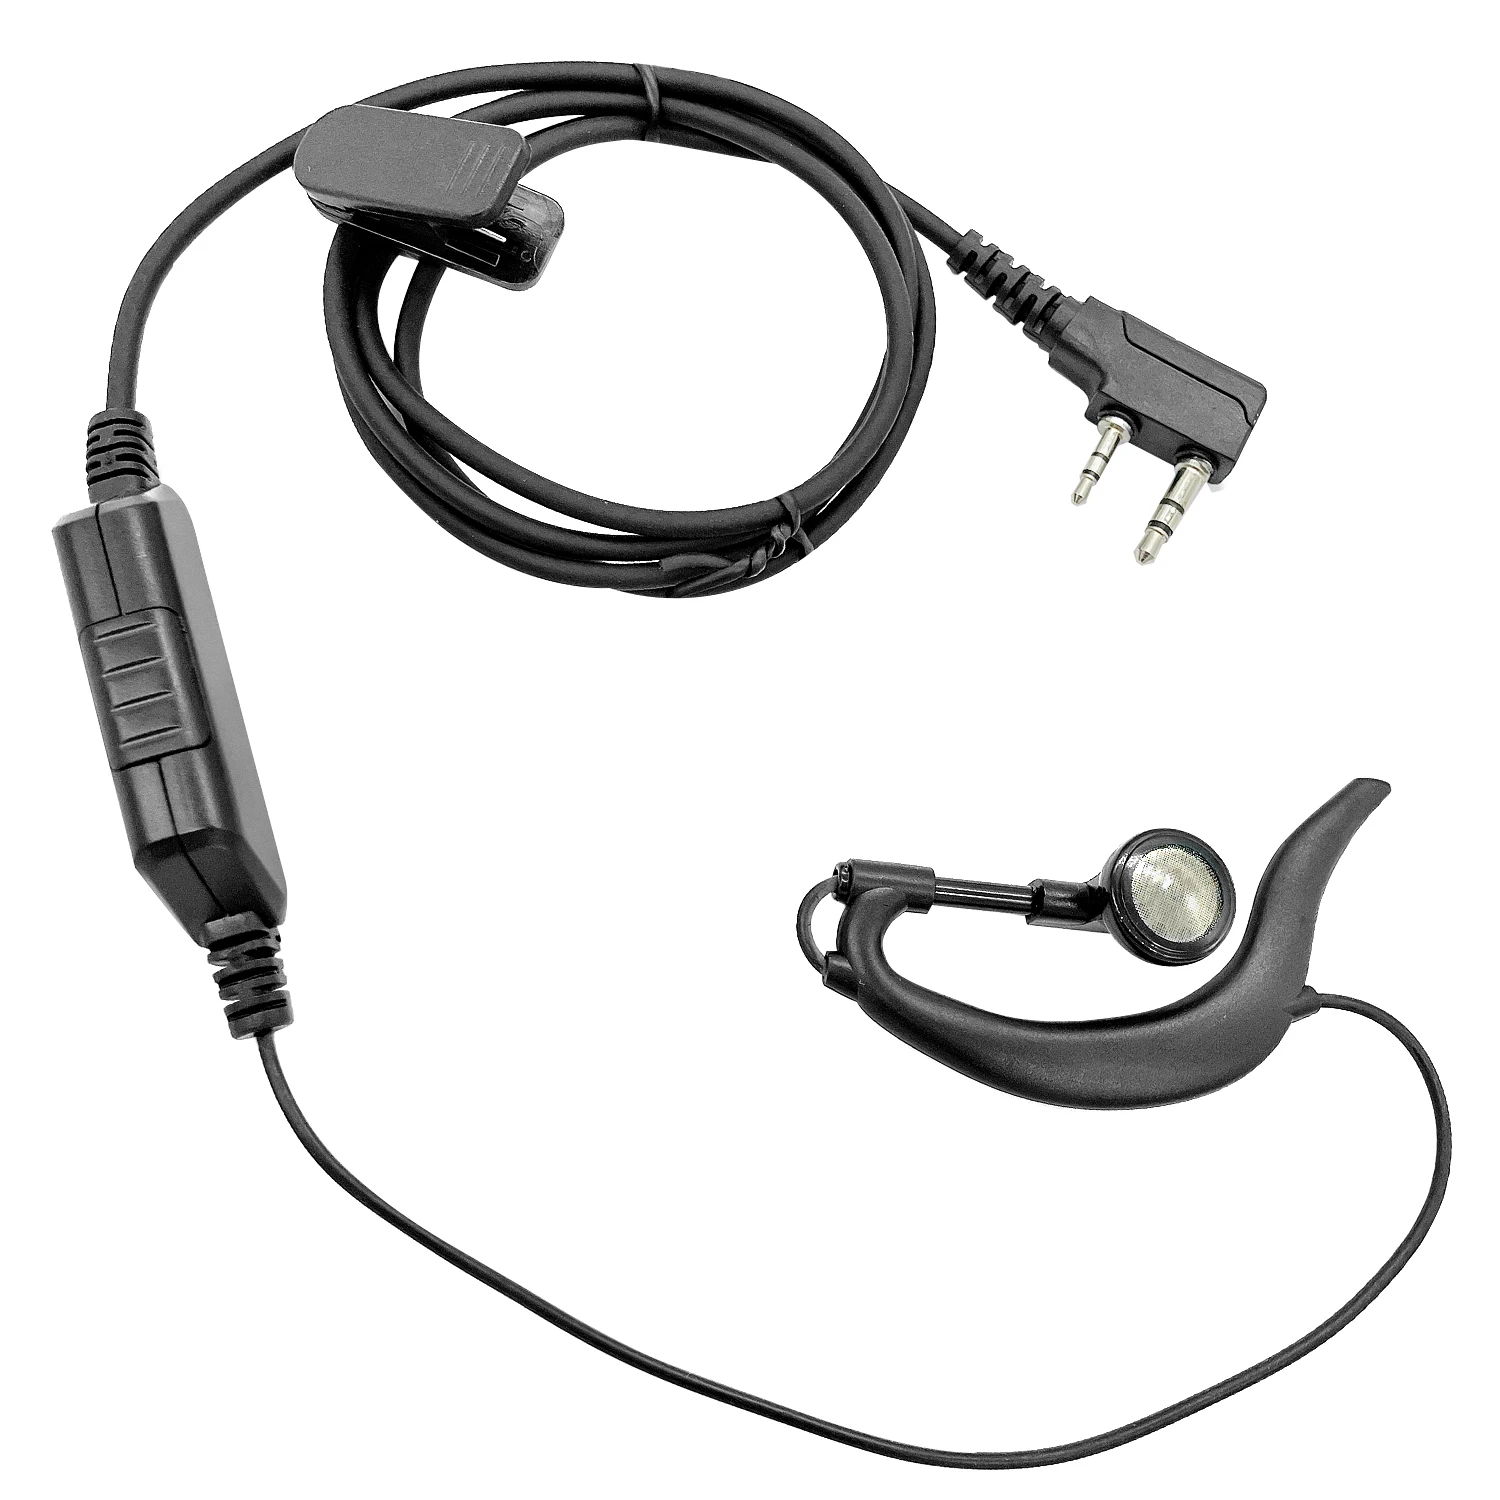 Type G ears hang walkie talkie headset Earpiece for baofeng BF-T3, BF-888S, BF-F8HP, BF-F9, BF-F9 V2+, RD-5R two way radios enlarge